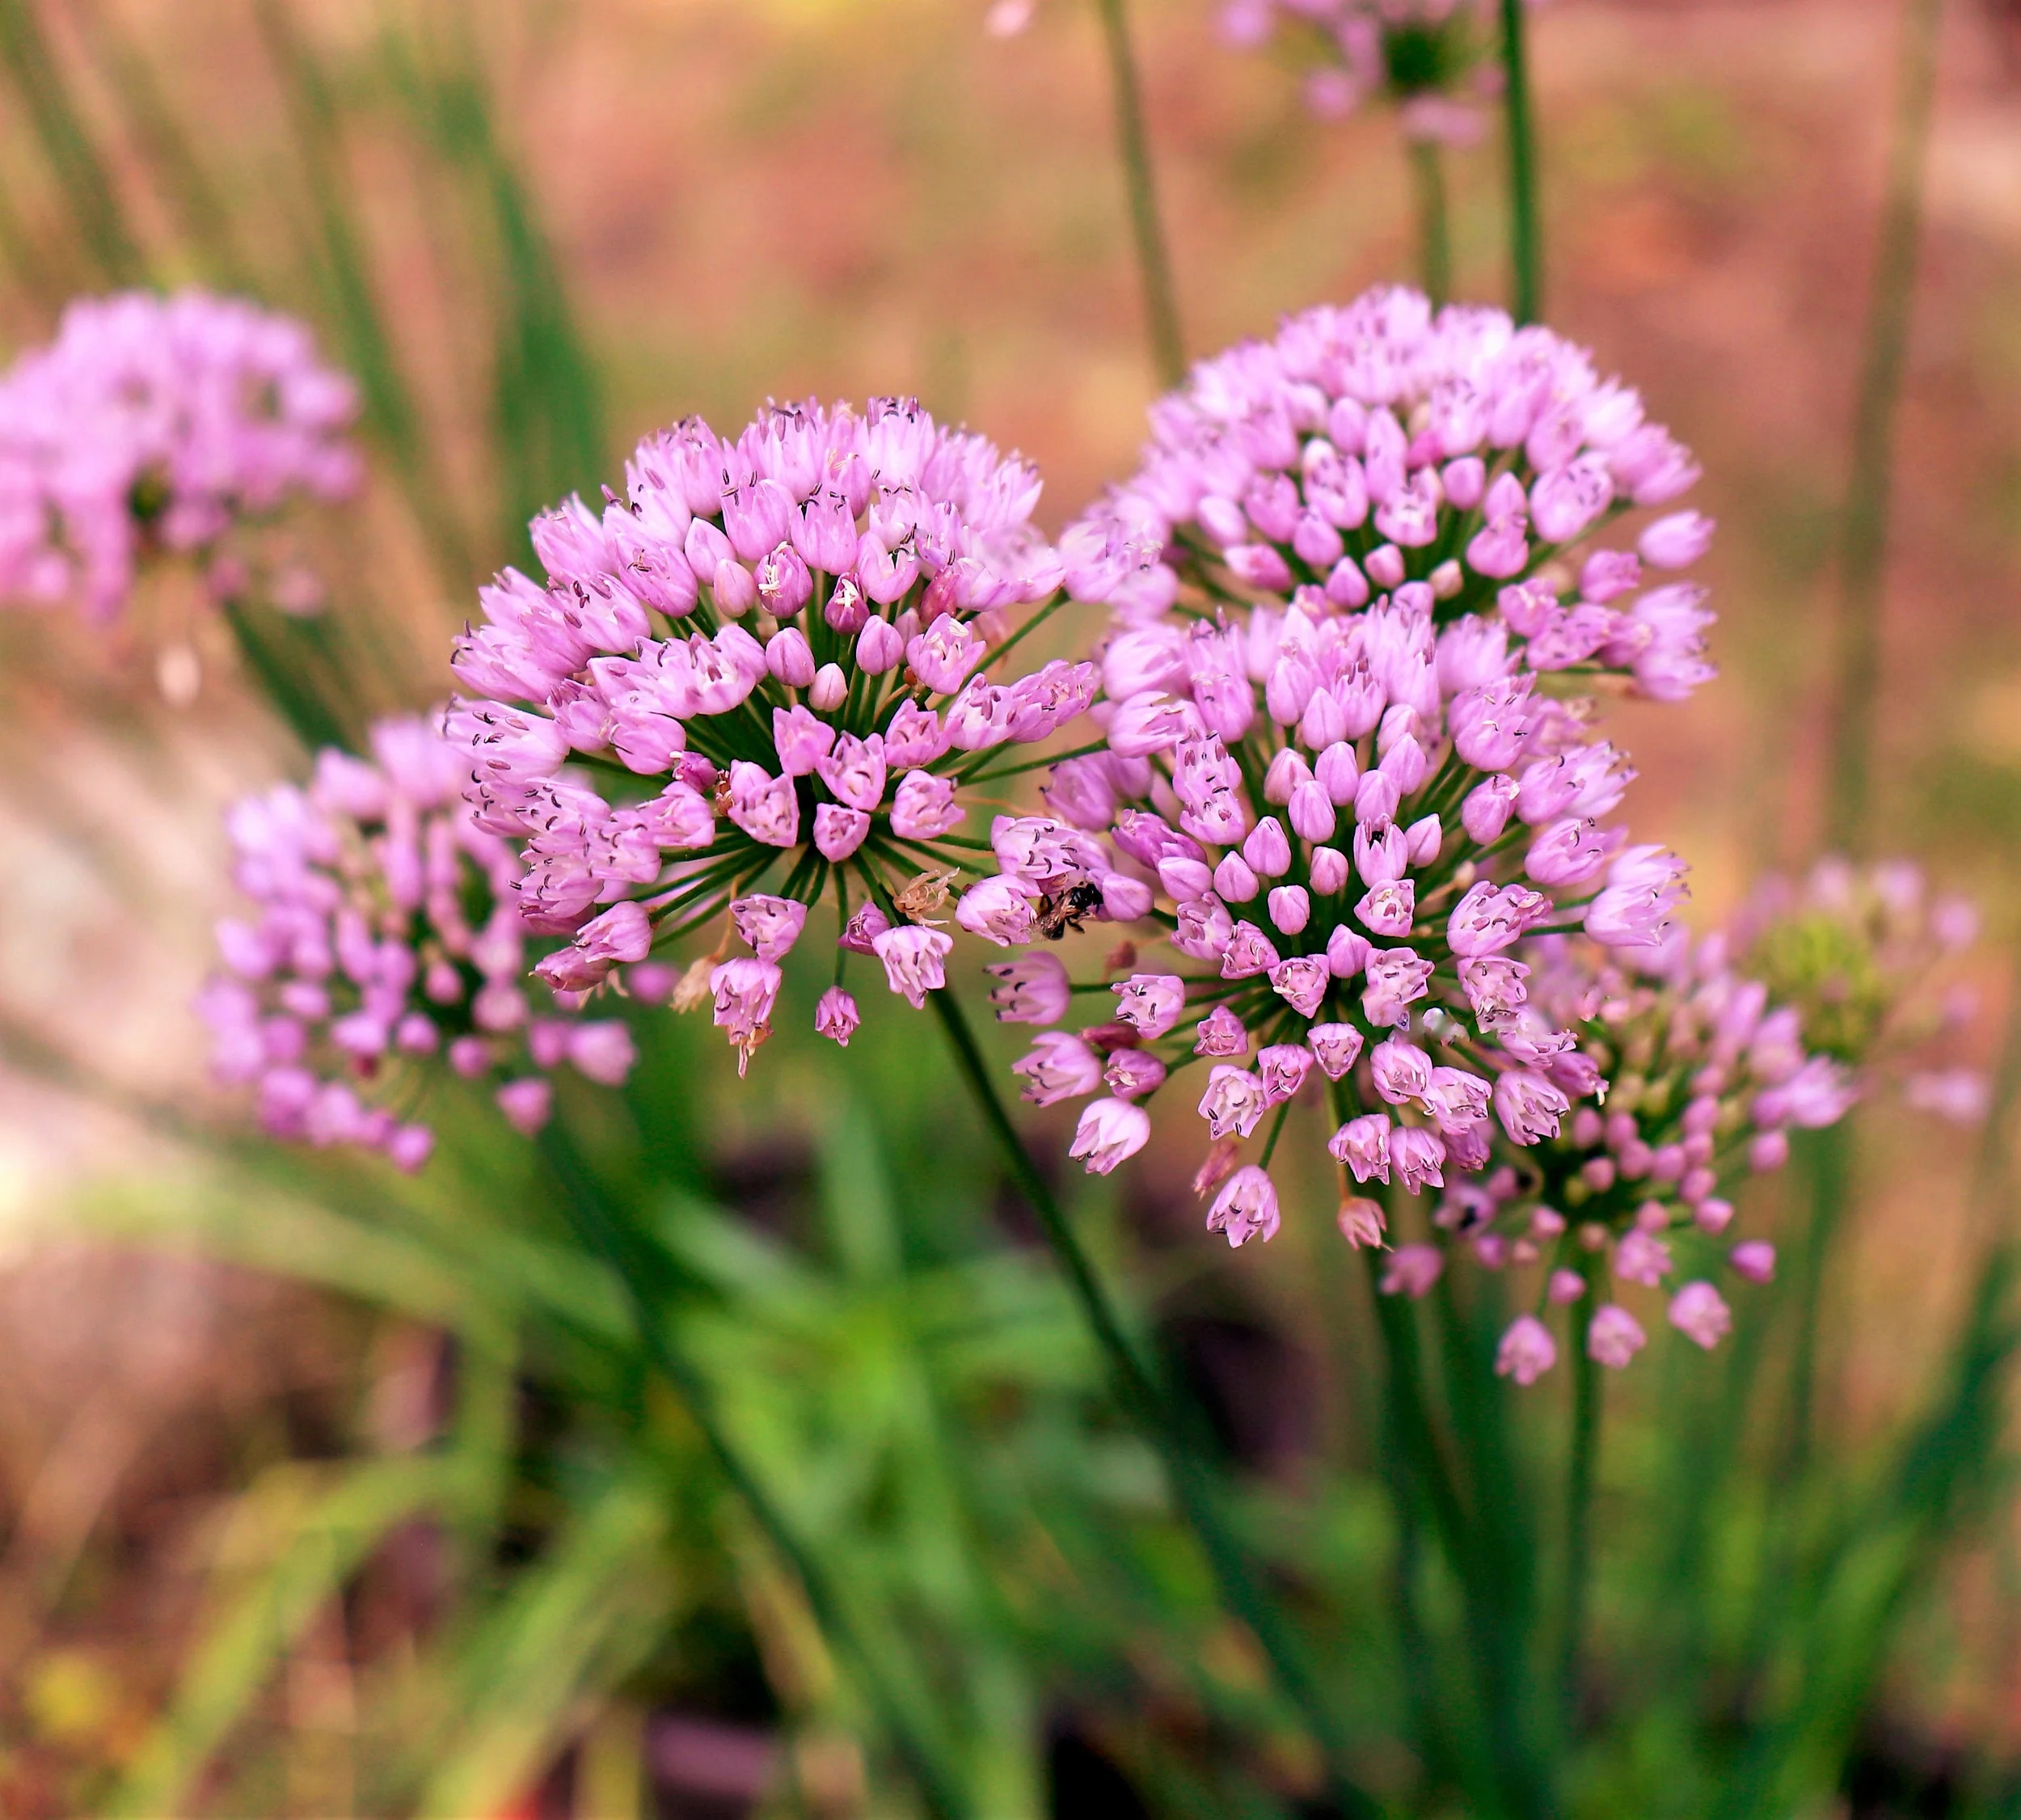 10 Seeds MOUSE GARLIC Allium Angulosum Wild Garlic Pink Flower Herb Seeds - image 1 of 6